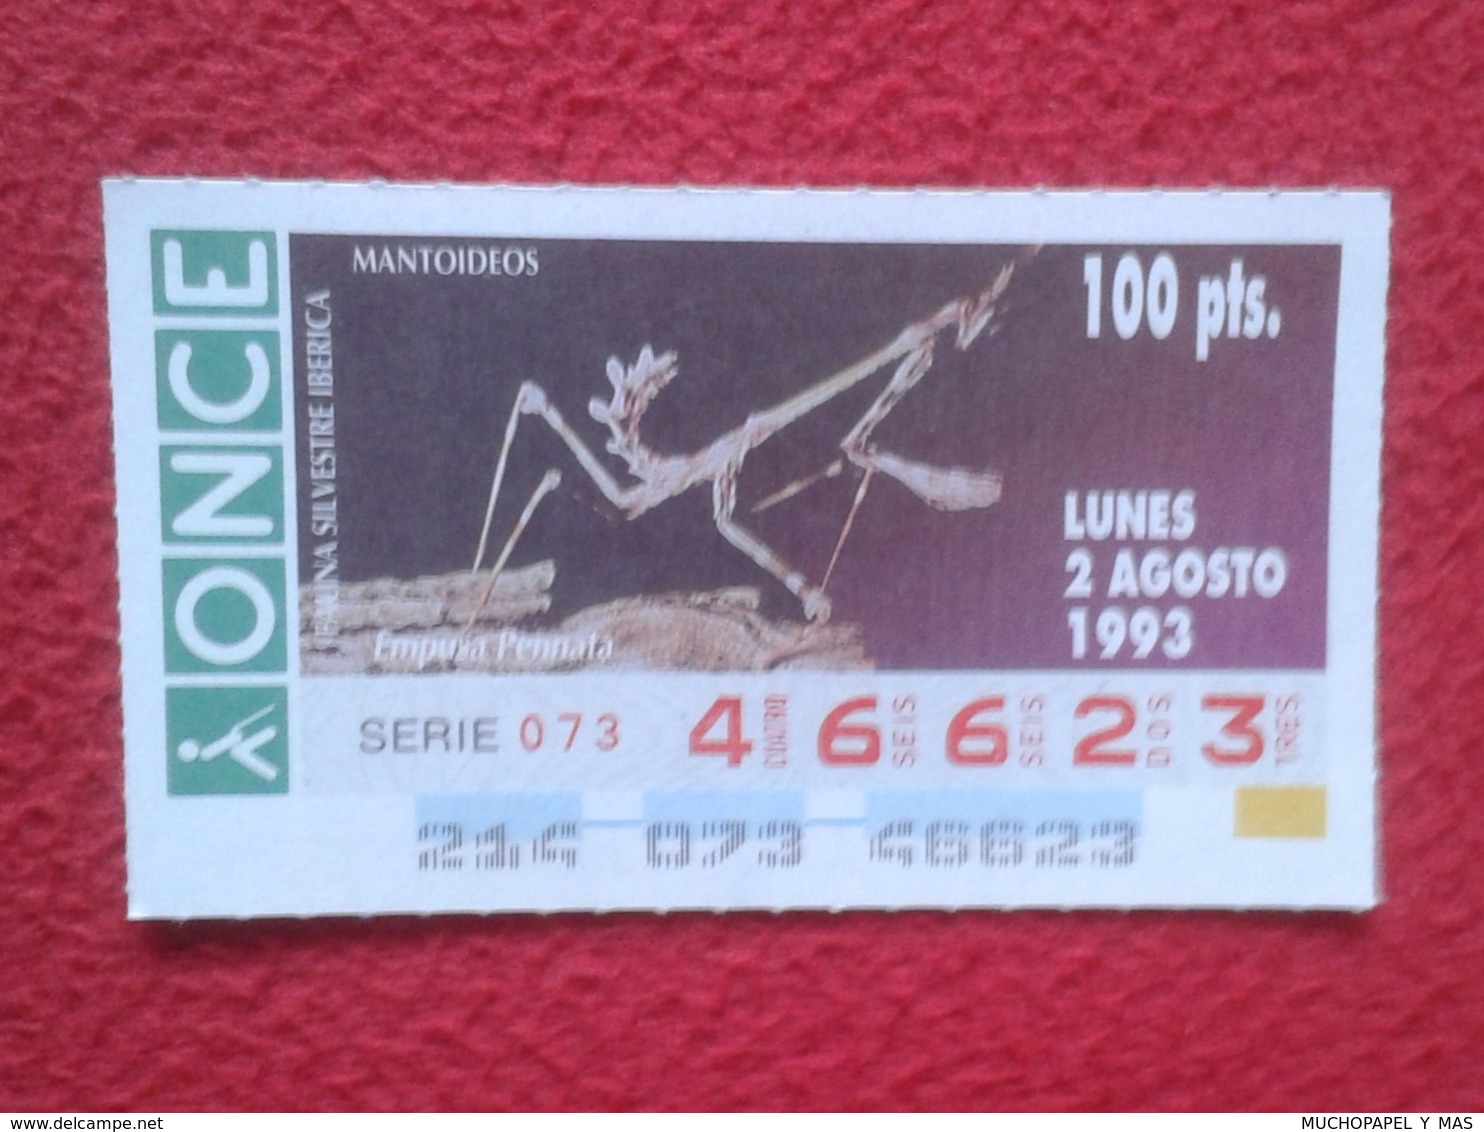 CUPÓN DE ONCE 1993 LOTTERY LOTERIE SPAIN LOTERÍA FAUNA FAUNE IBÉRICA EMPUSA PENNATA MANTIS PALO CONEHEAD RELIGIOSA O SIM - Billetes De Lotería